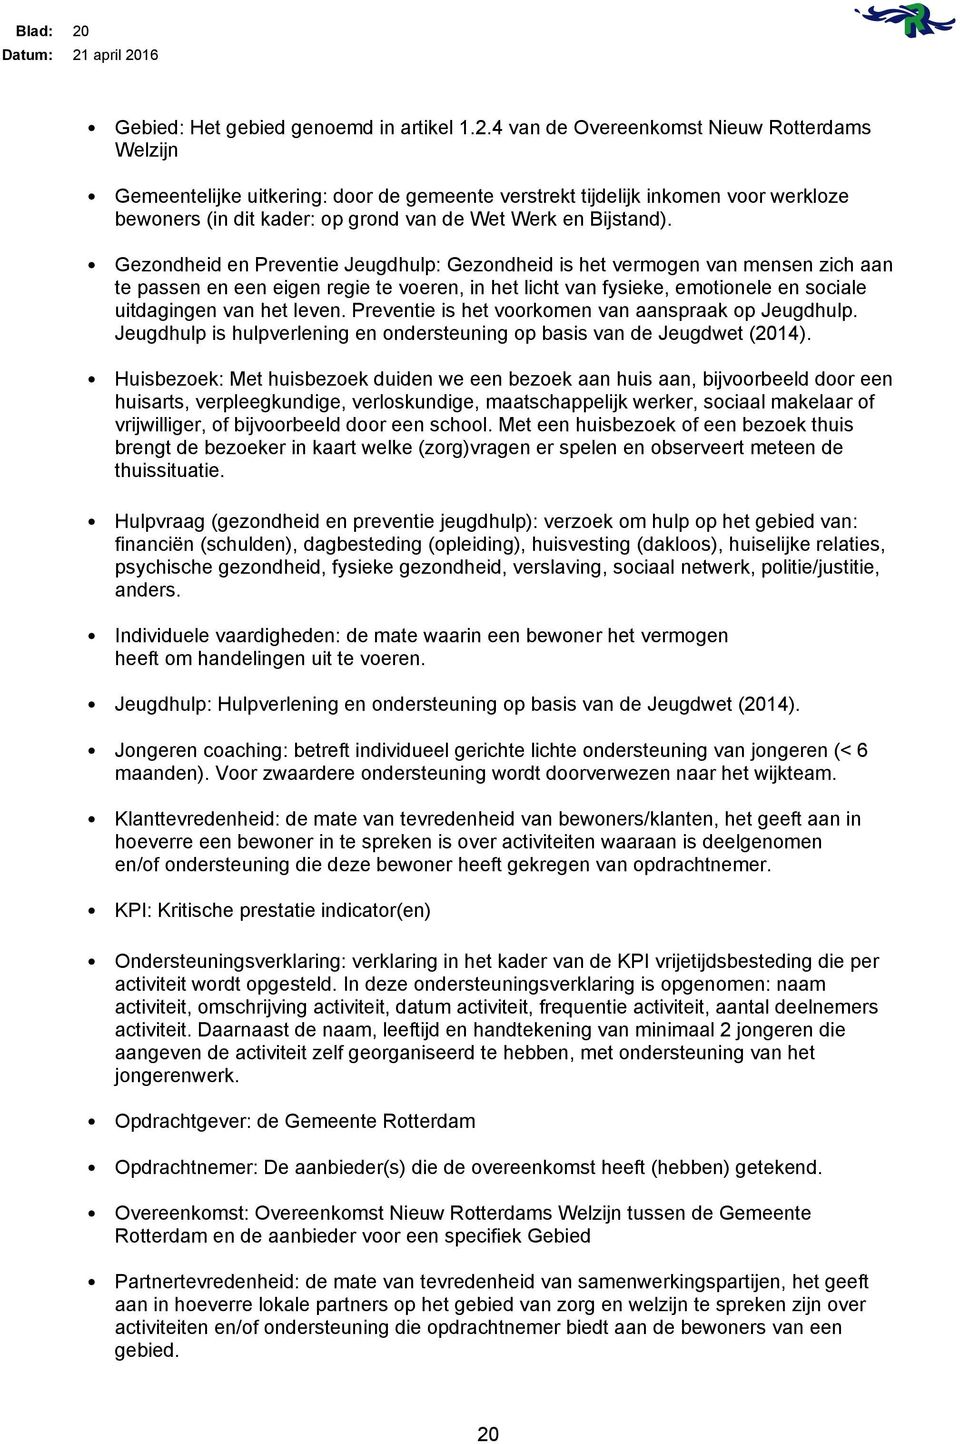 4 van de Overeenkomst Nieuw Rotterdams Welzijn Gemeentelijke uitkering: door de gemeente verstrekt tijdelijk inkomen voor werkloze bewoners (in dit kader: op grond van de Wet Werk en Bijstand).